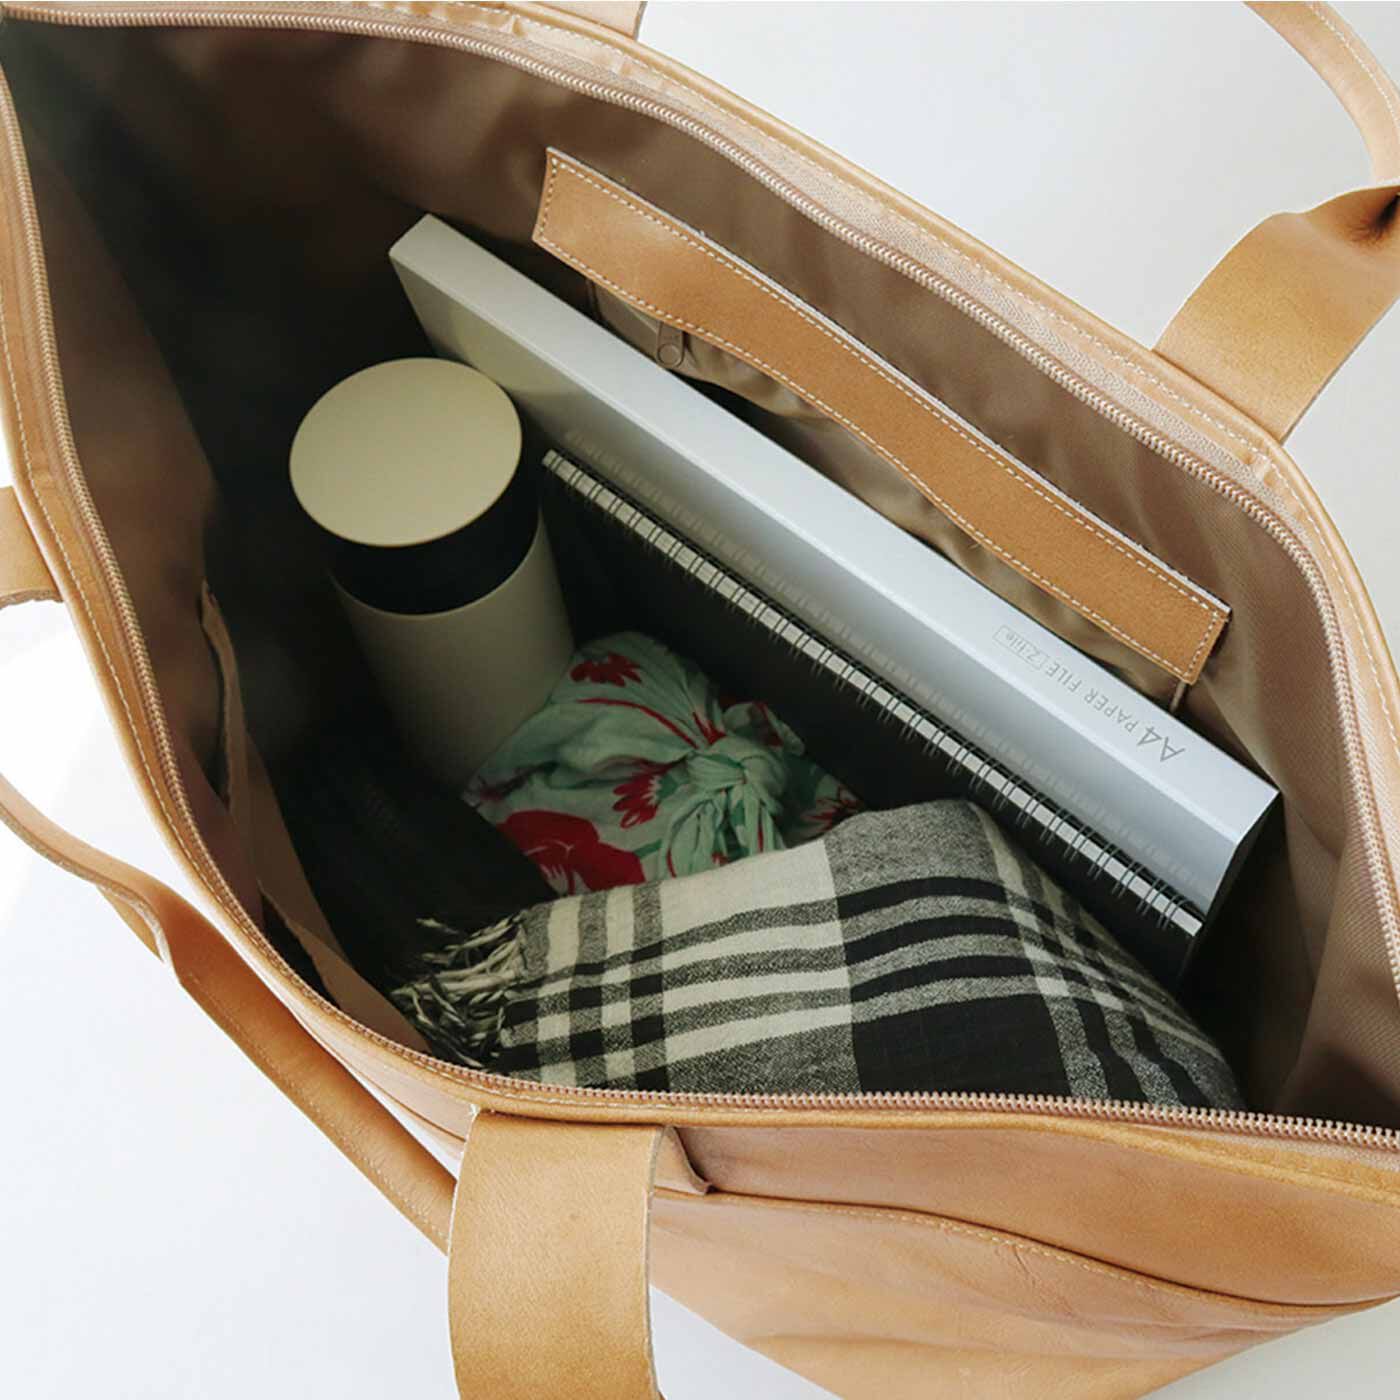 ＆Stories|プロダクトデザイナーと作った 職人本革のお仕事鞄〈ミルクティーベージュ〉[本革　鞄：日本製]|ノートPCにファイル、出張の荷物もスッキリの収納力。